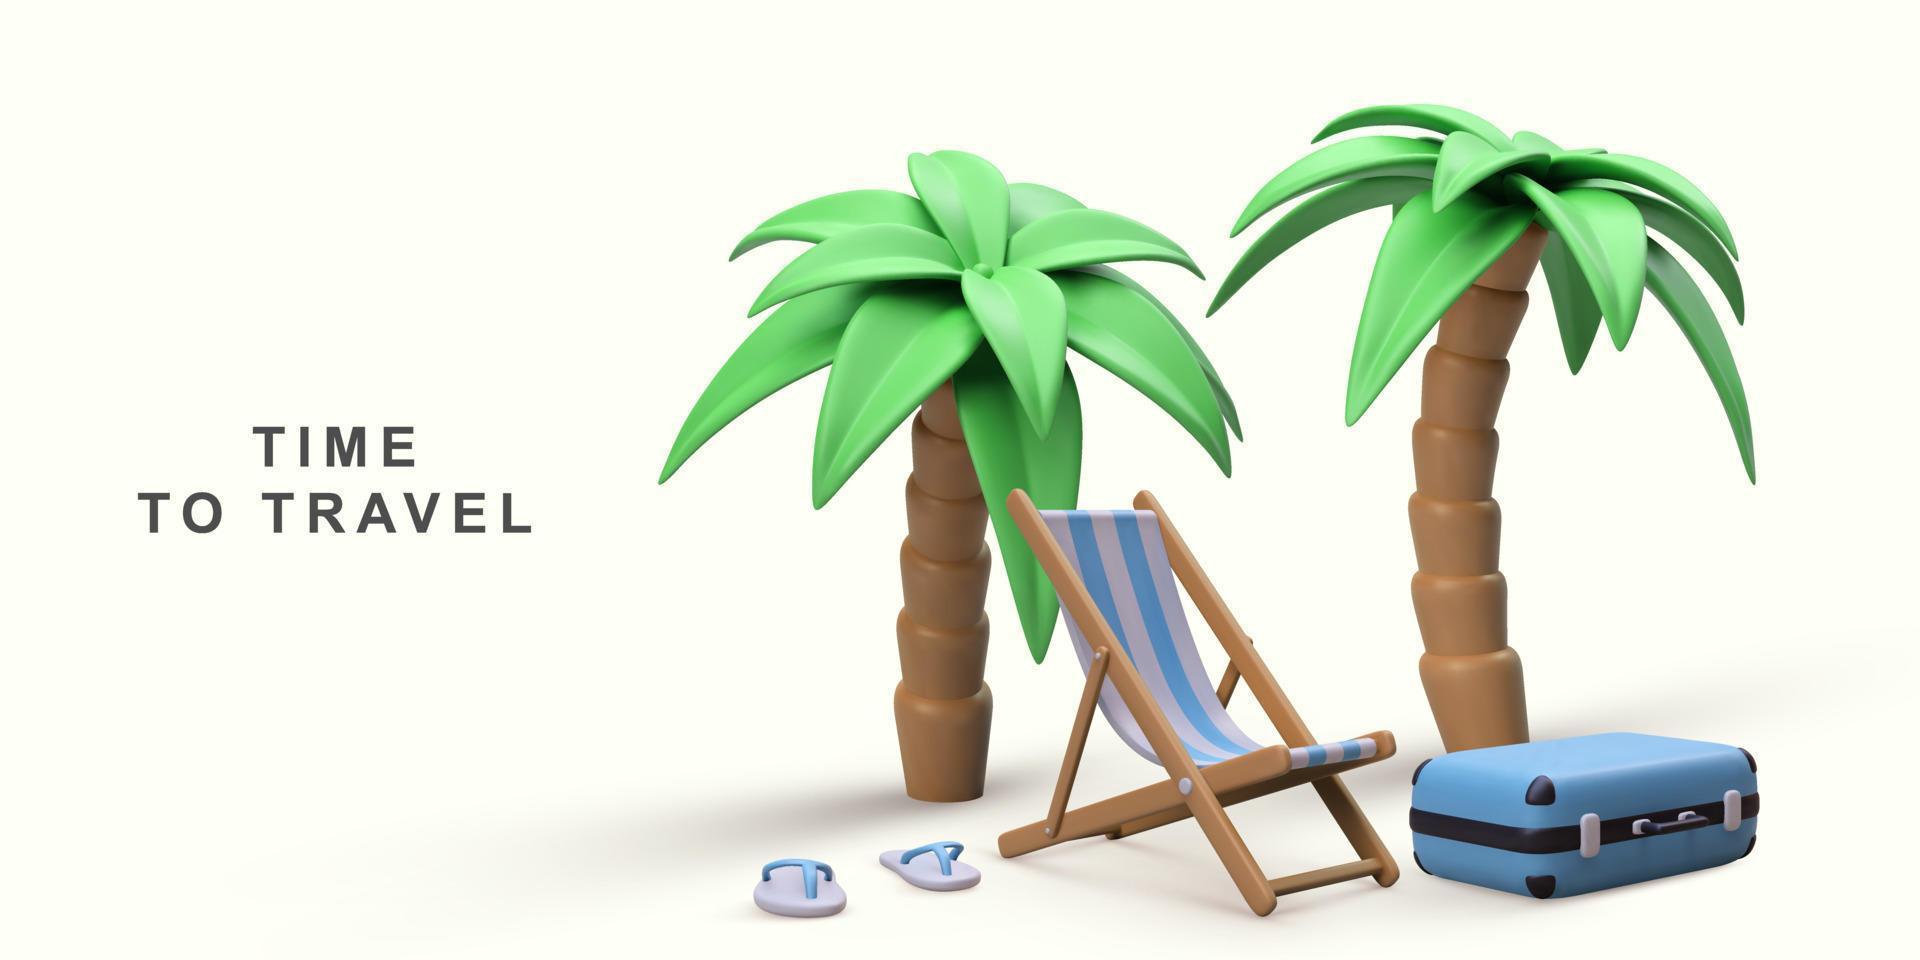 3d verão período de férias conceito com de praia cadeira e verão elementos. vetor ilustração.